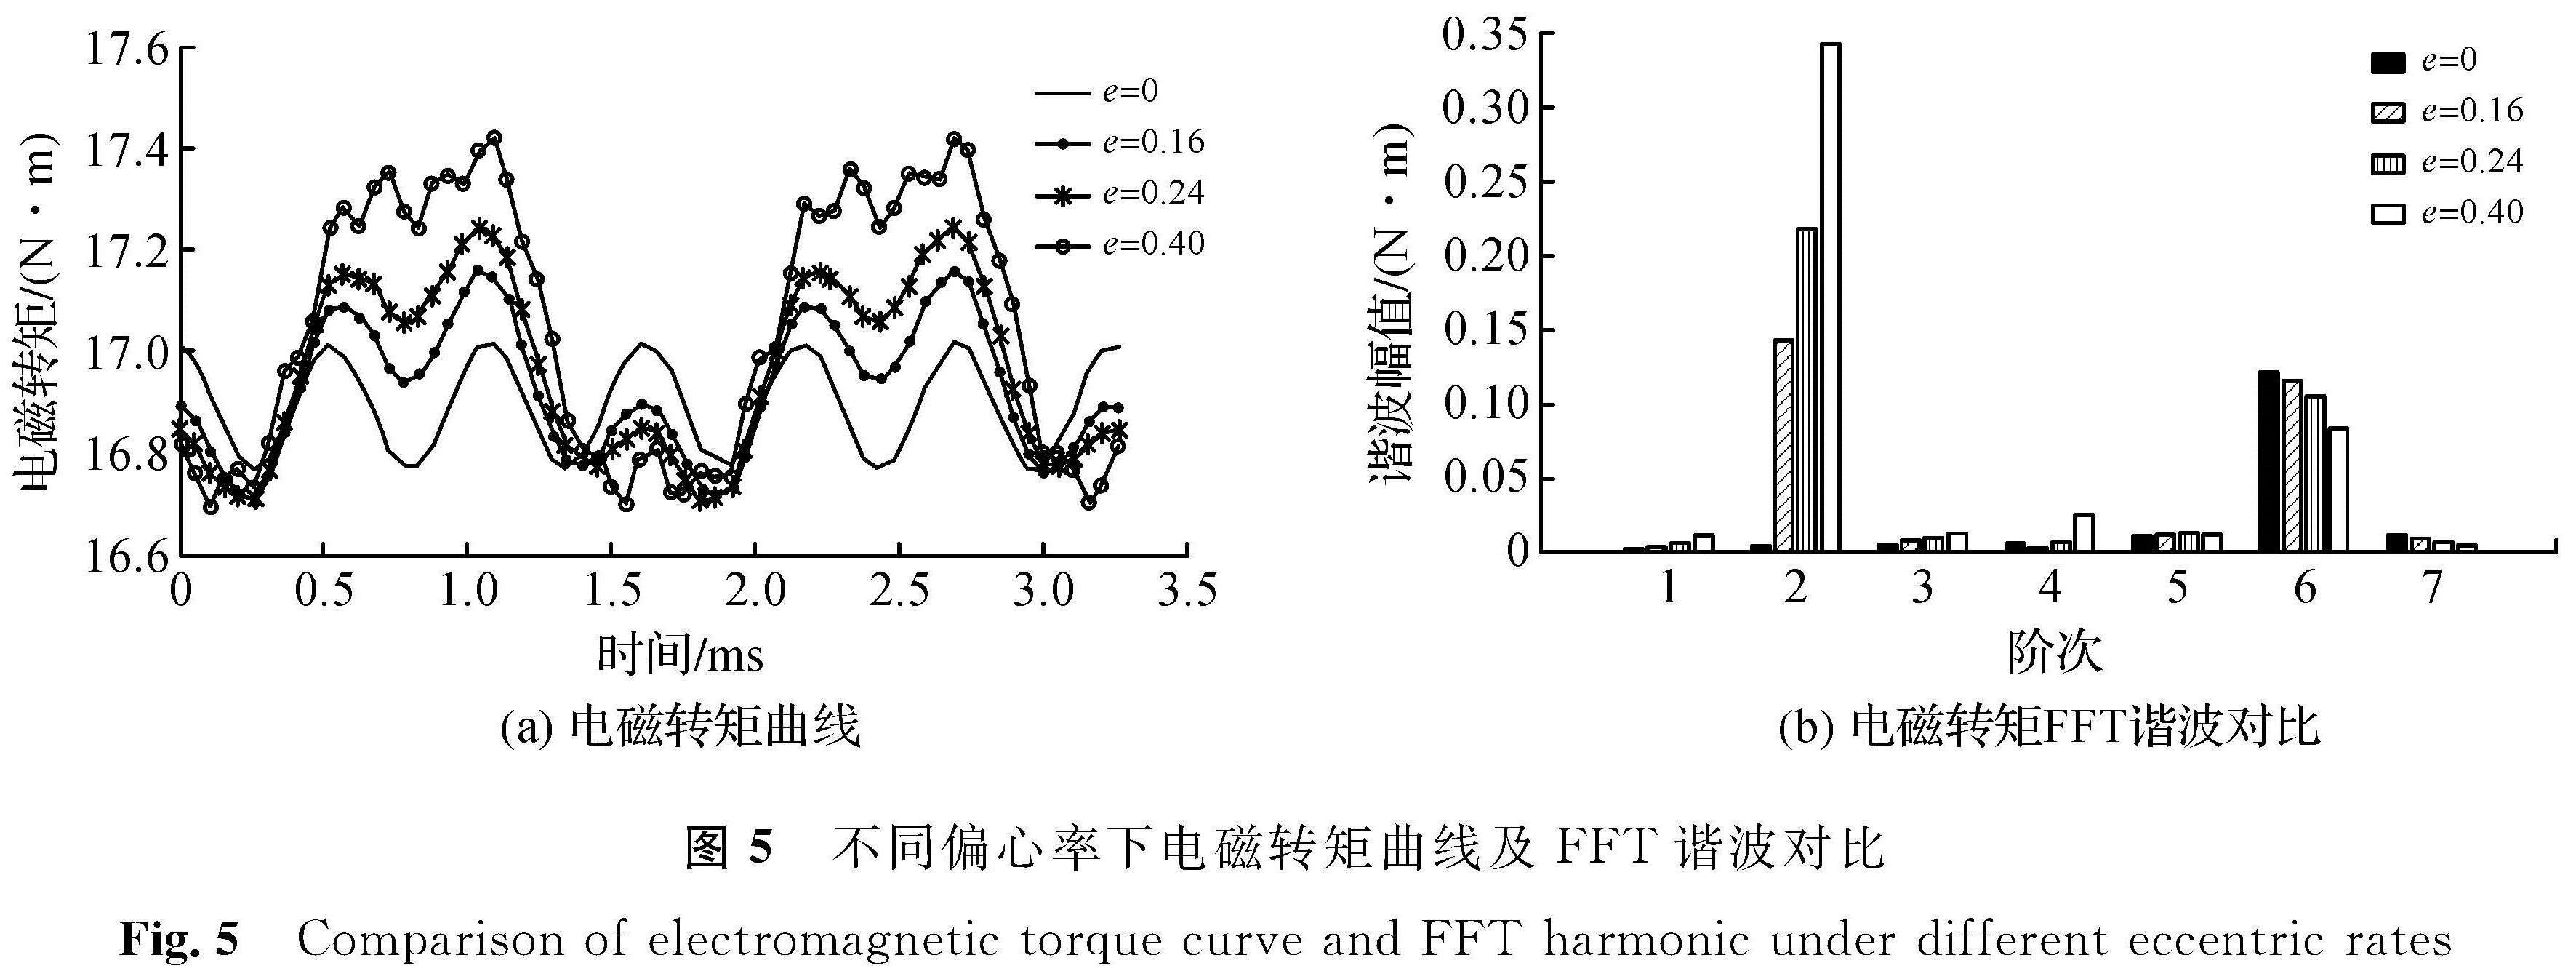 图5 不同偏心率下电磁转矩曲线及FFT谐波对比<br/>Fig.5 Comparison of electromagnetic torque curve and FFT harmonic under different eccentric rates